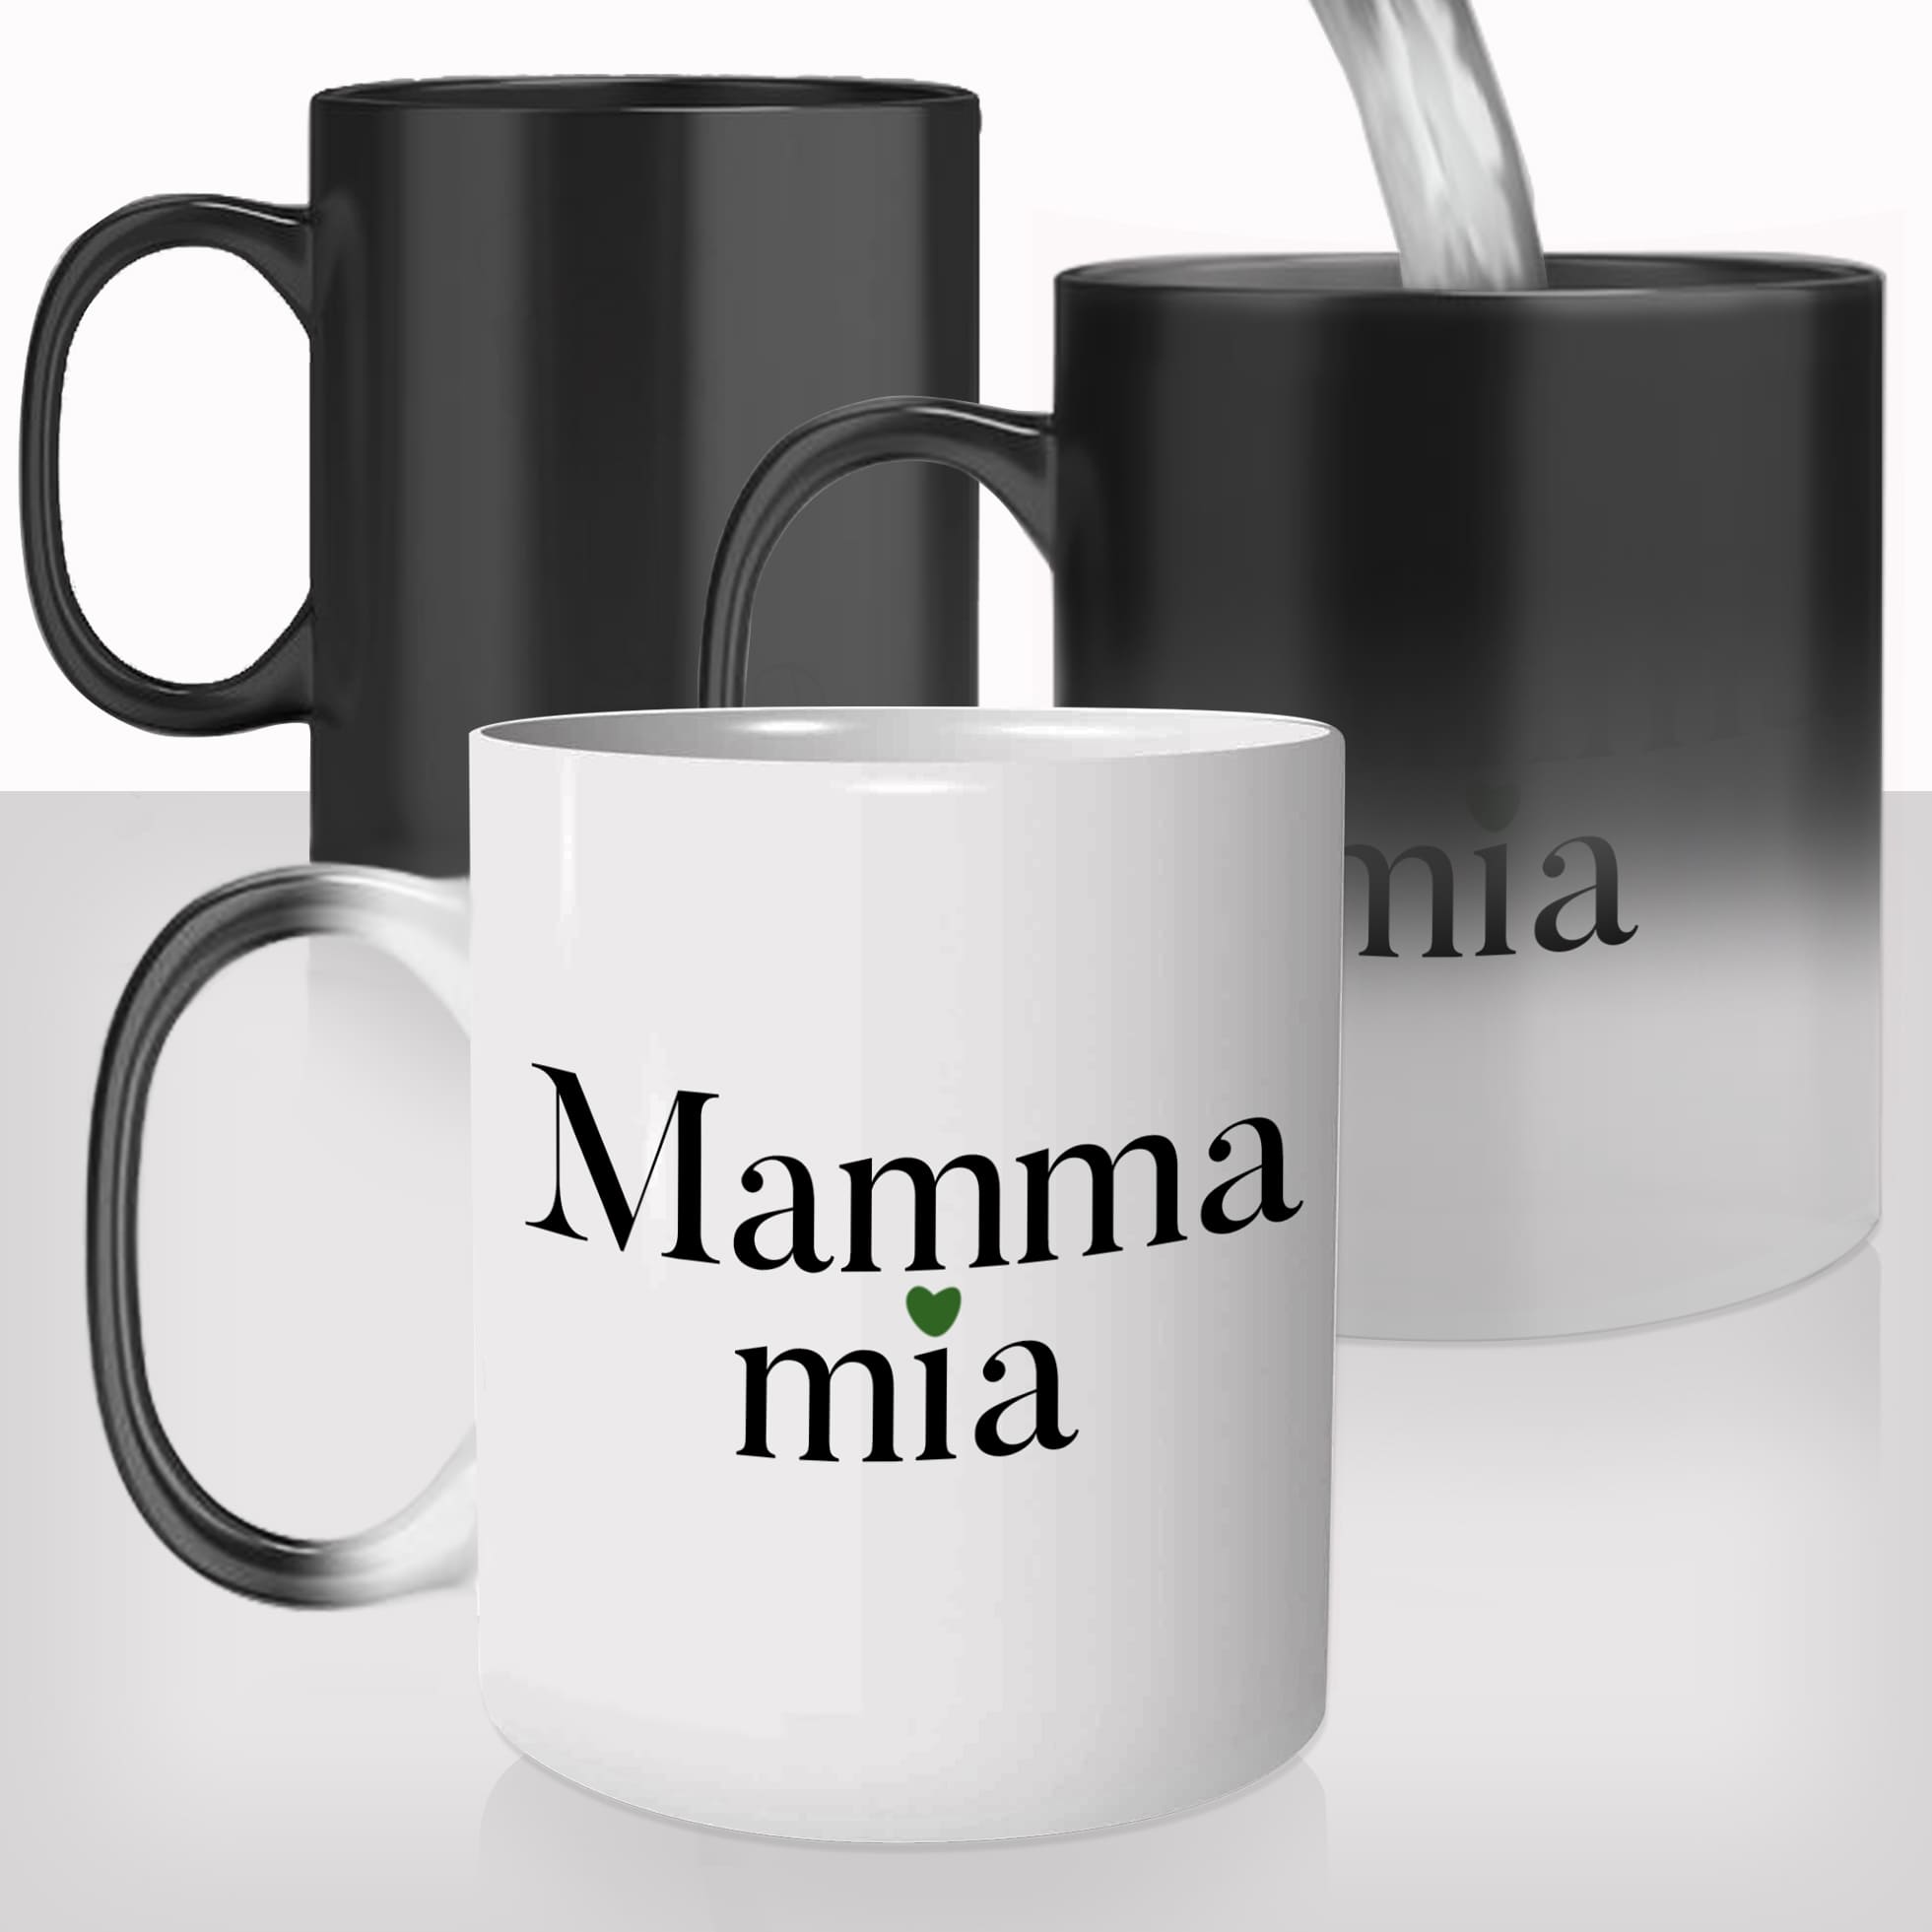 mug-magique-personnalisable-thermoreactif-tasse-thermique-mamma-mia-ma-maman-fête-des-mères-personnalisé-fun-idée-cadeau-original